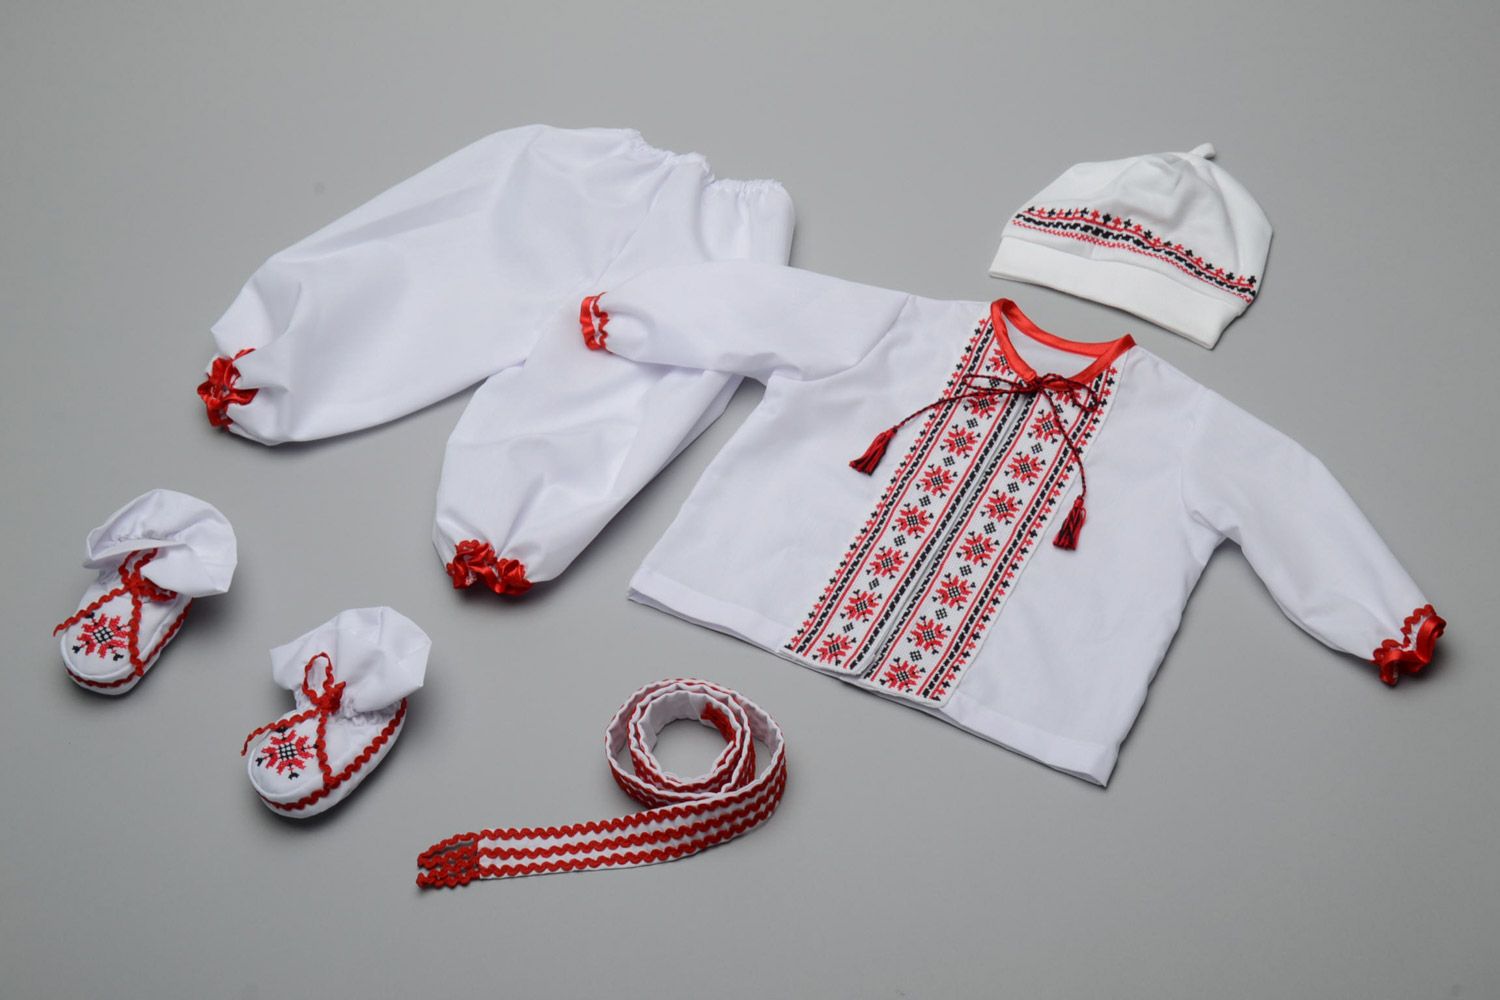 Этнический набор одежды для мальчика вышиванка штаны пояс шапочка пинетки и пояс фото 1